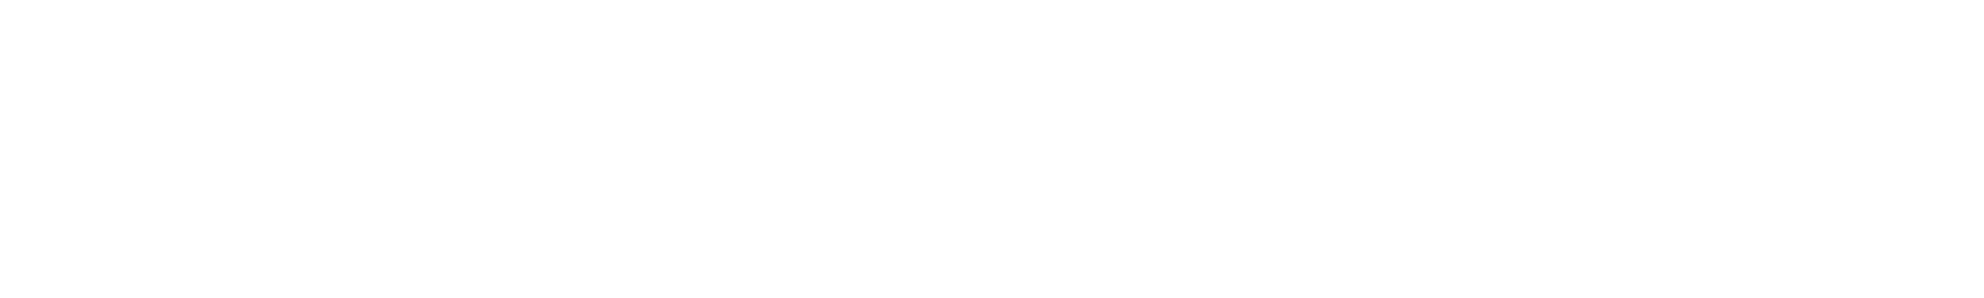 VivaWallet_Logo